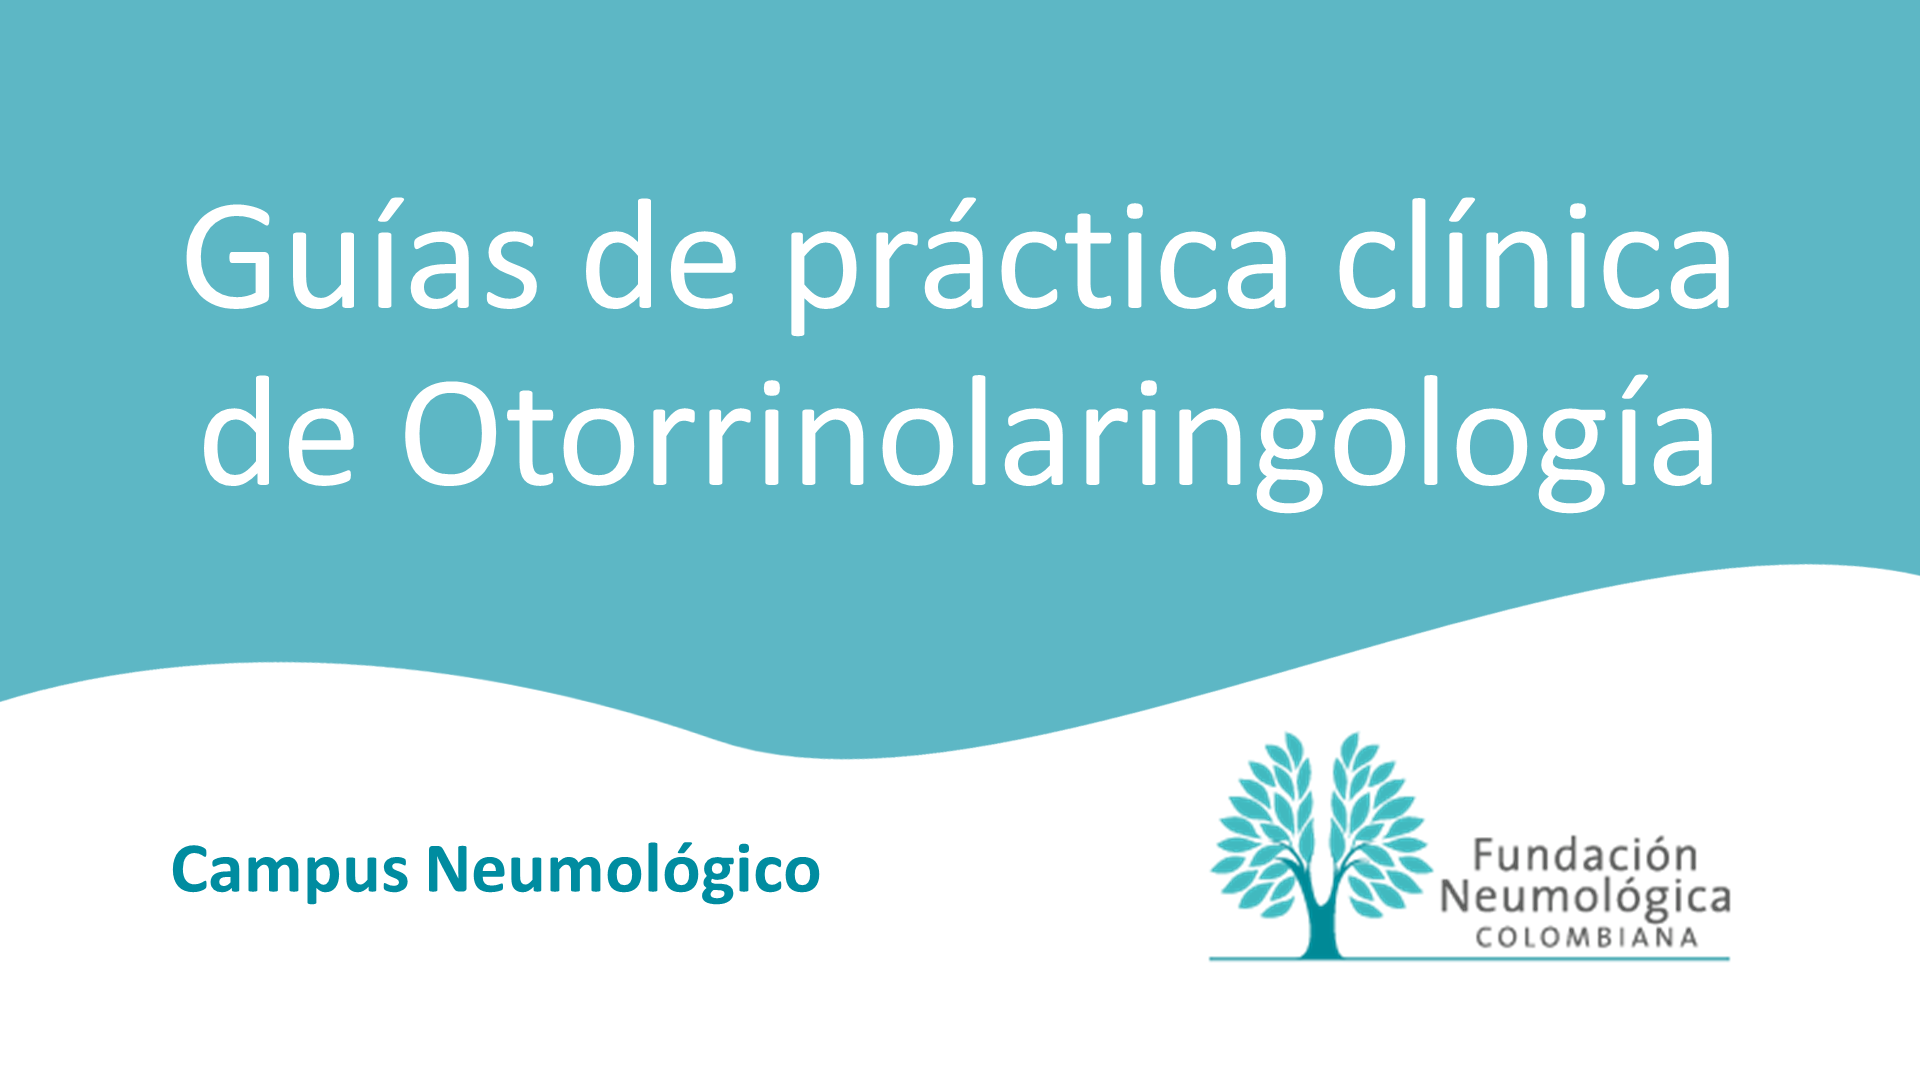 Guías de práctica clínica de Otorrinolaringología